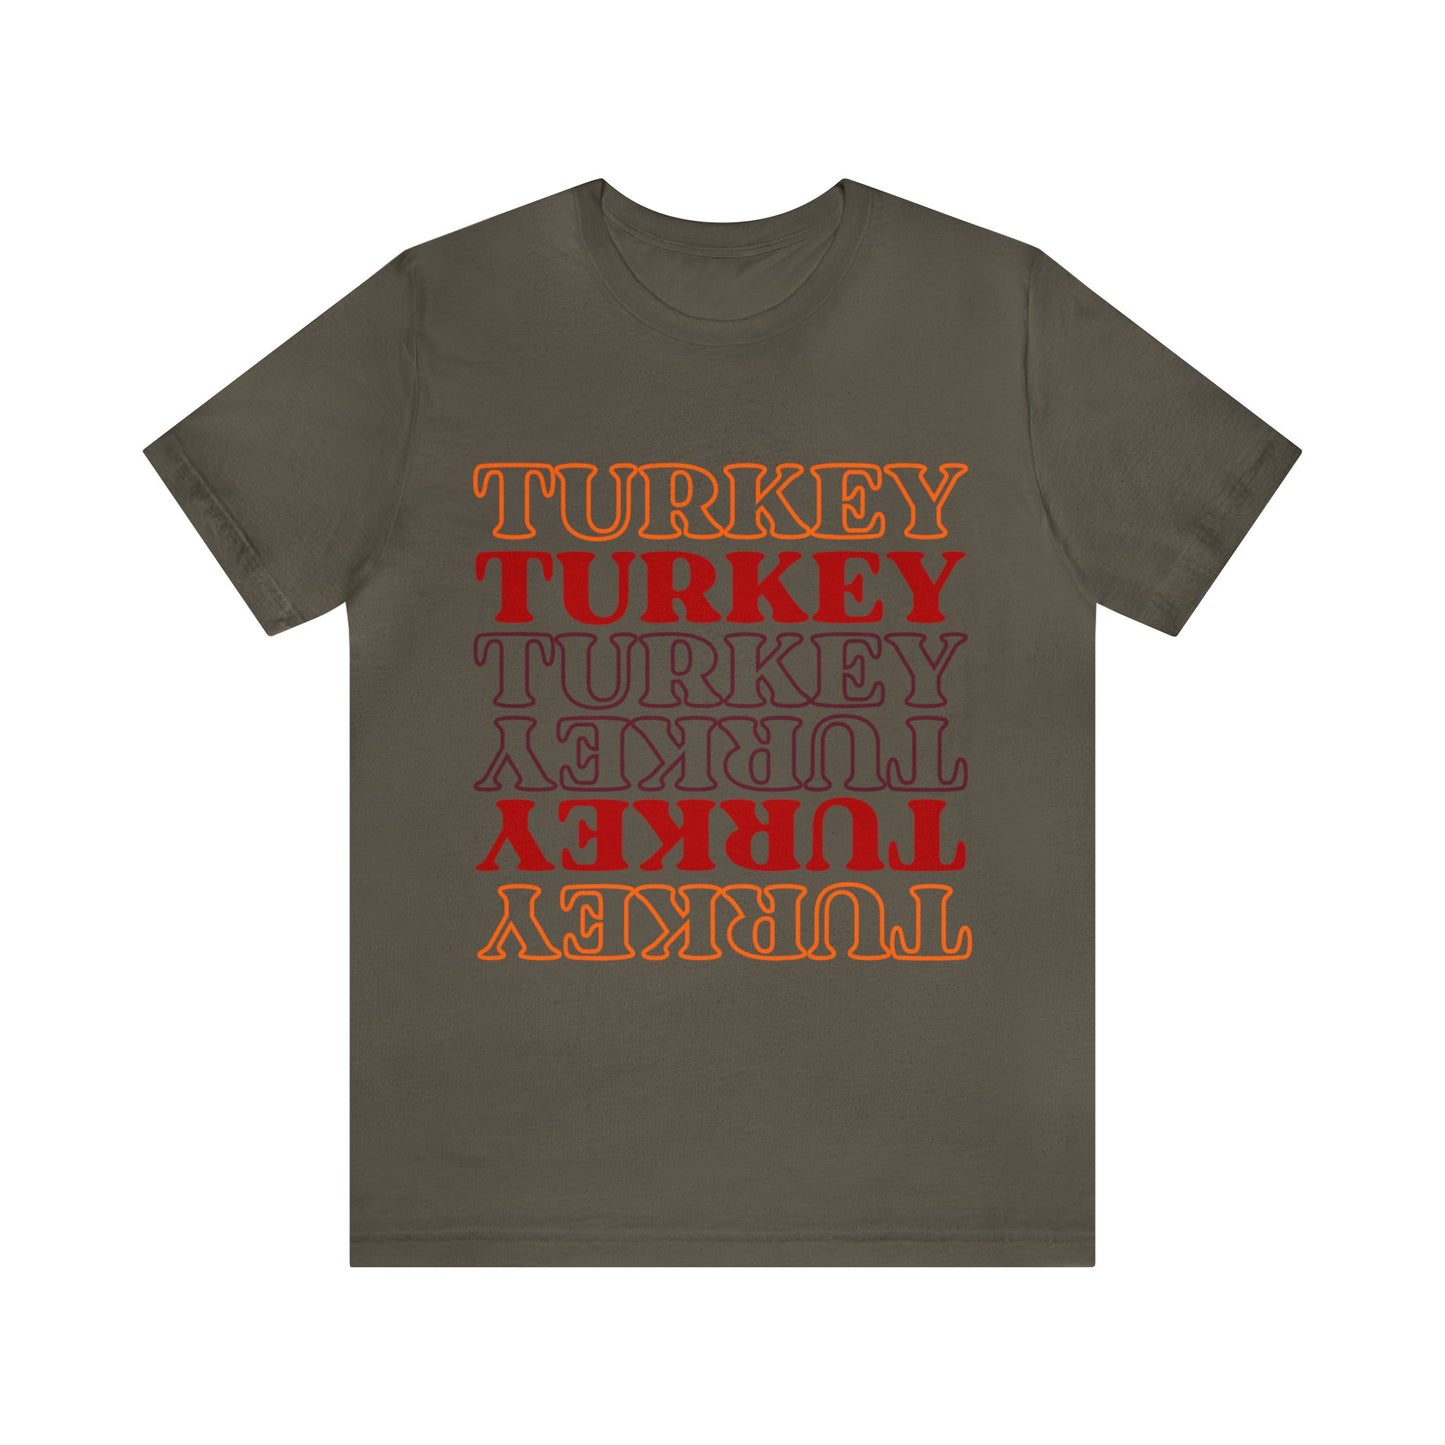 Turkey Turkey Turkey Unisex Jersey Short Sleeve Tee